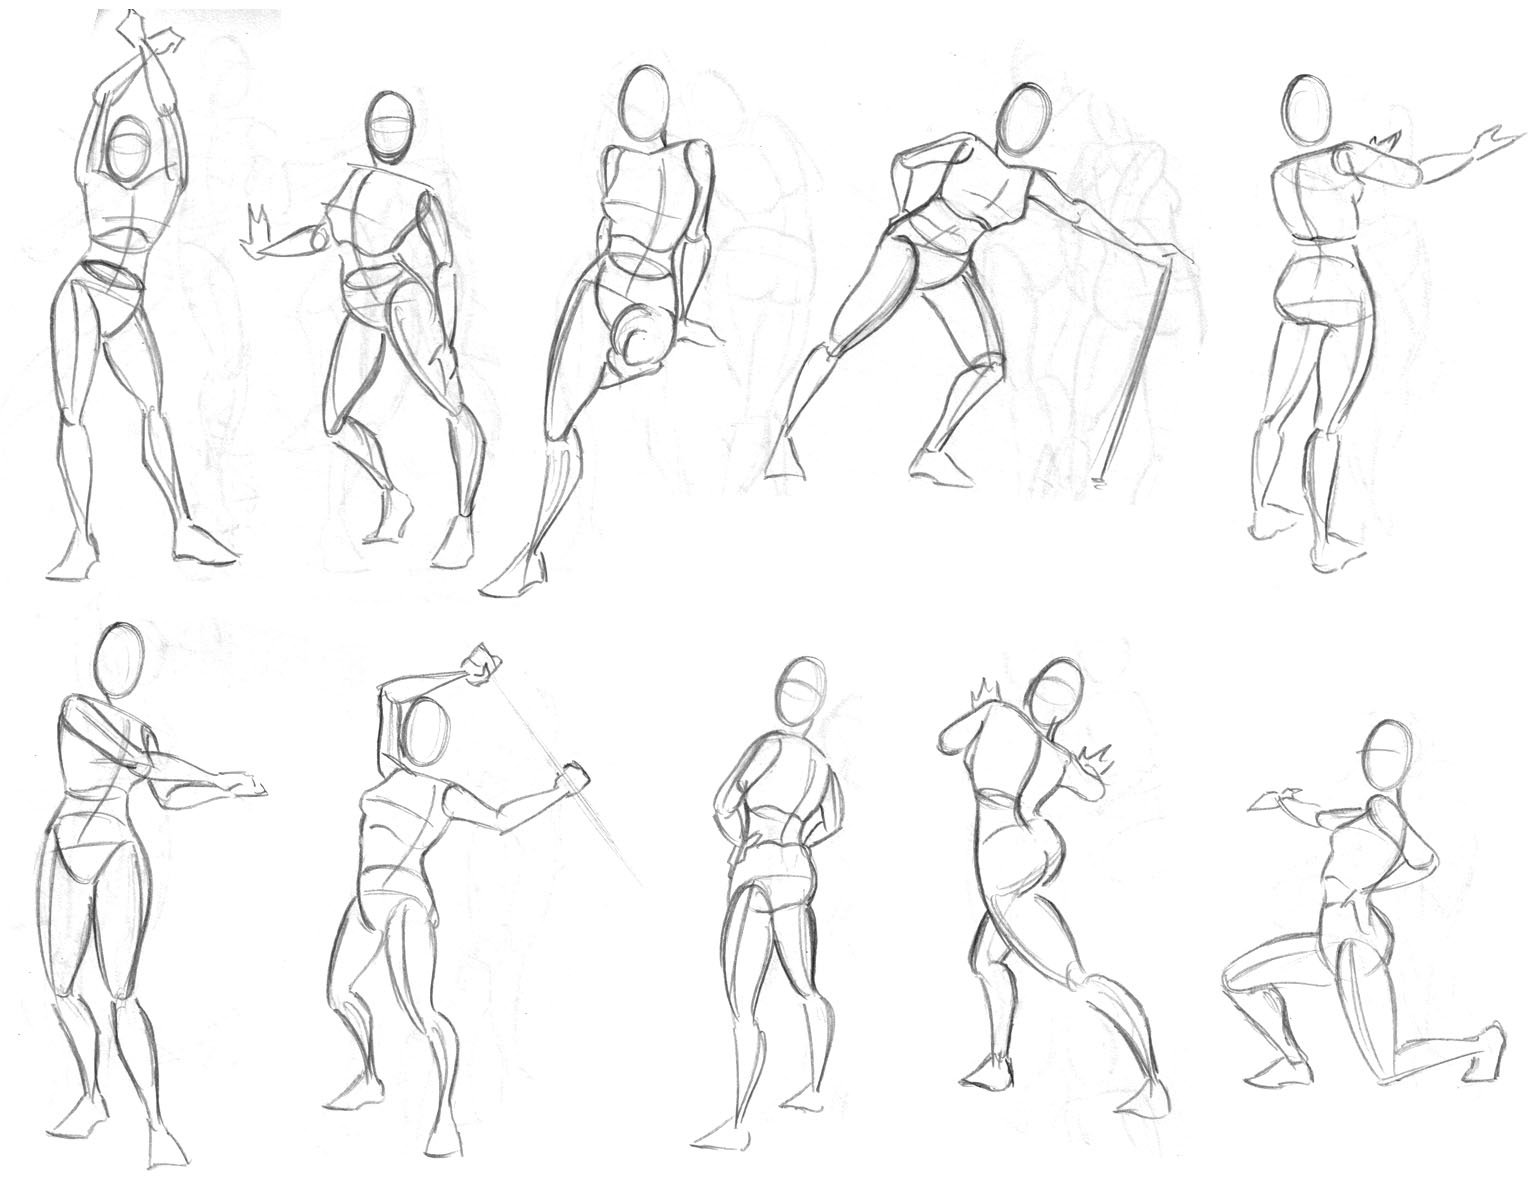 Изобразить человека в движении. Рисование человека в движении. Позы для рисования. Зарисовки фигуры человека в движении. Фигруы человека АВ разных позах.